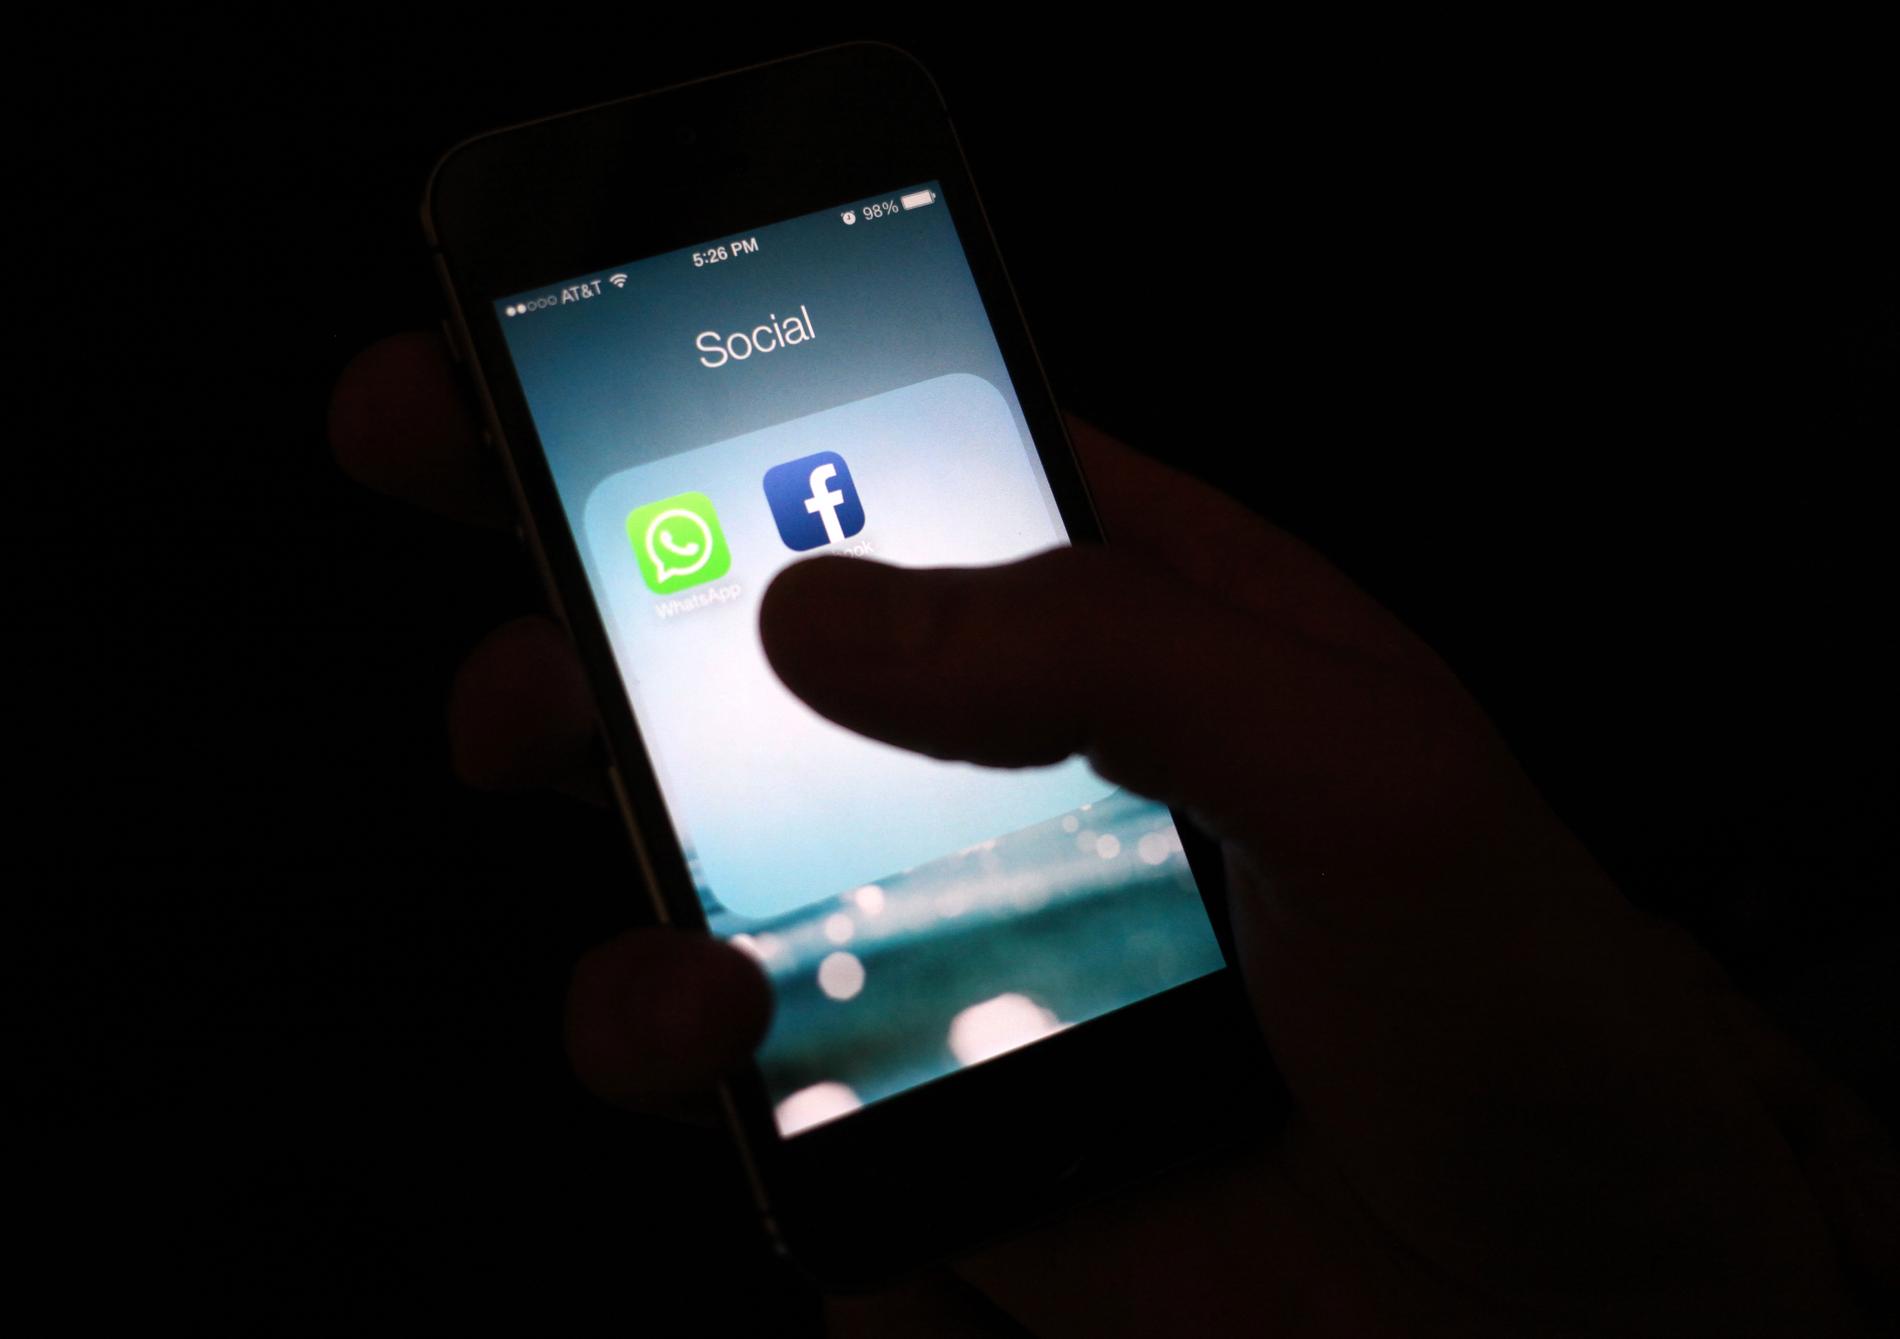 Ungdomarna i studien fick bland annat ange hur mycket tid de ägnade åt sociala medier som Facebook, Twitter och Whatsapp. Arkivbild.